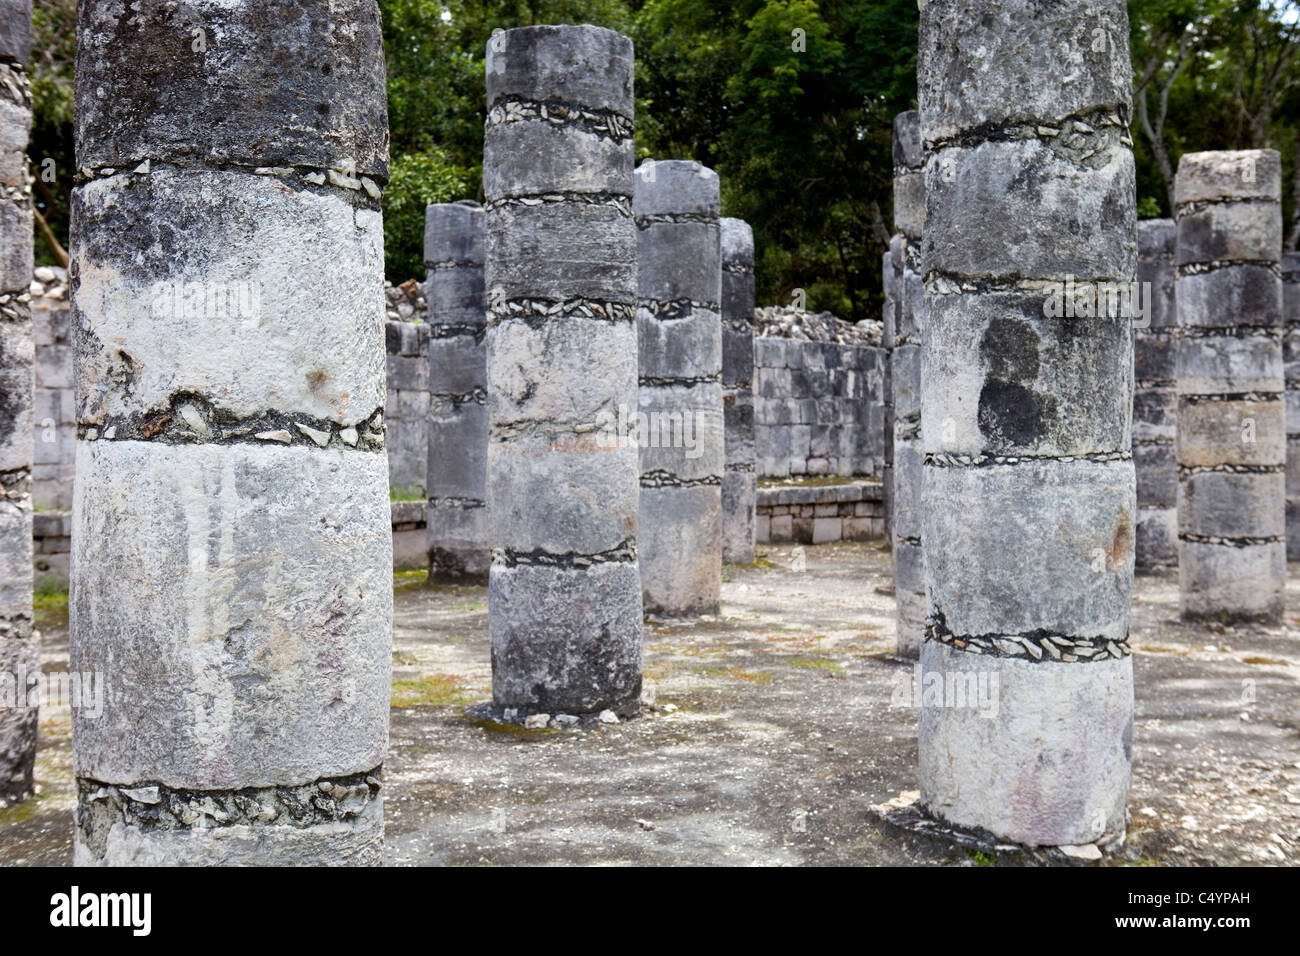 Ancient Mayan ruins at Chichen Itza, Yucatan, Mexico Stock Photo